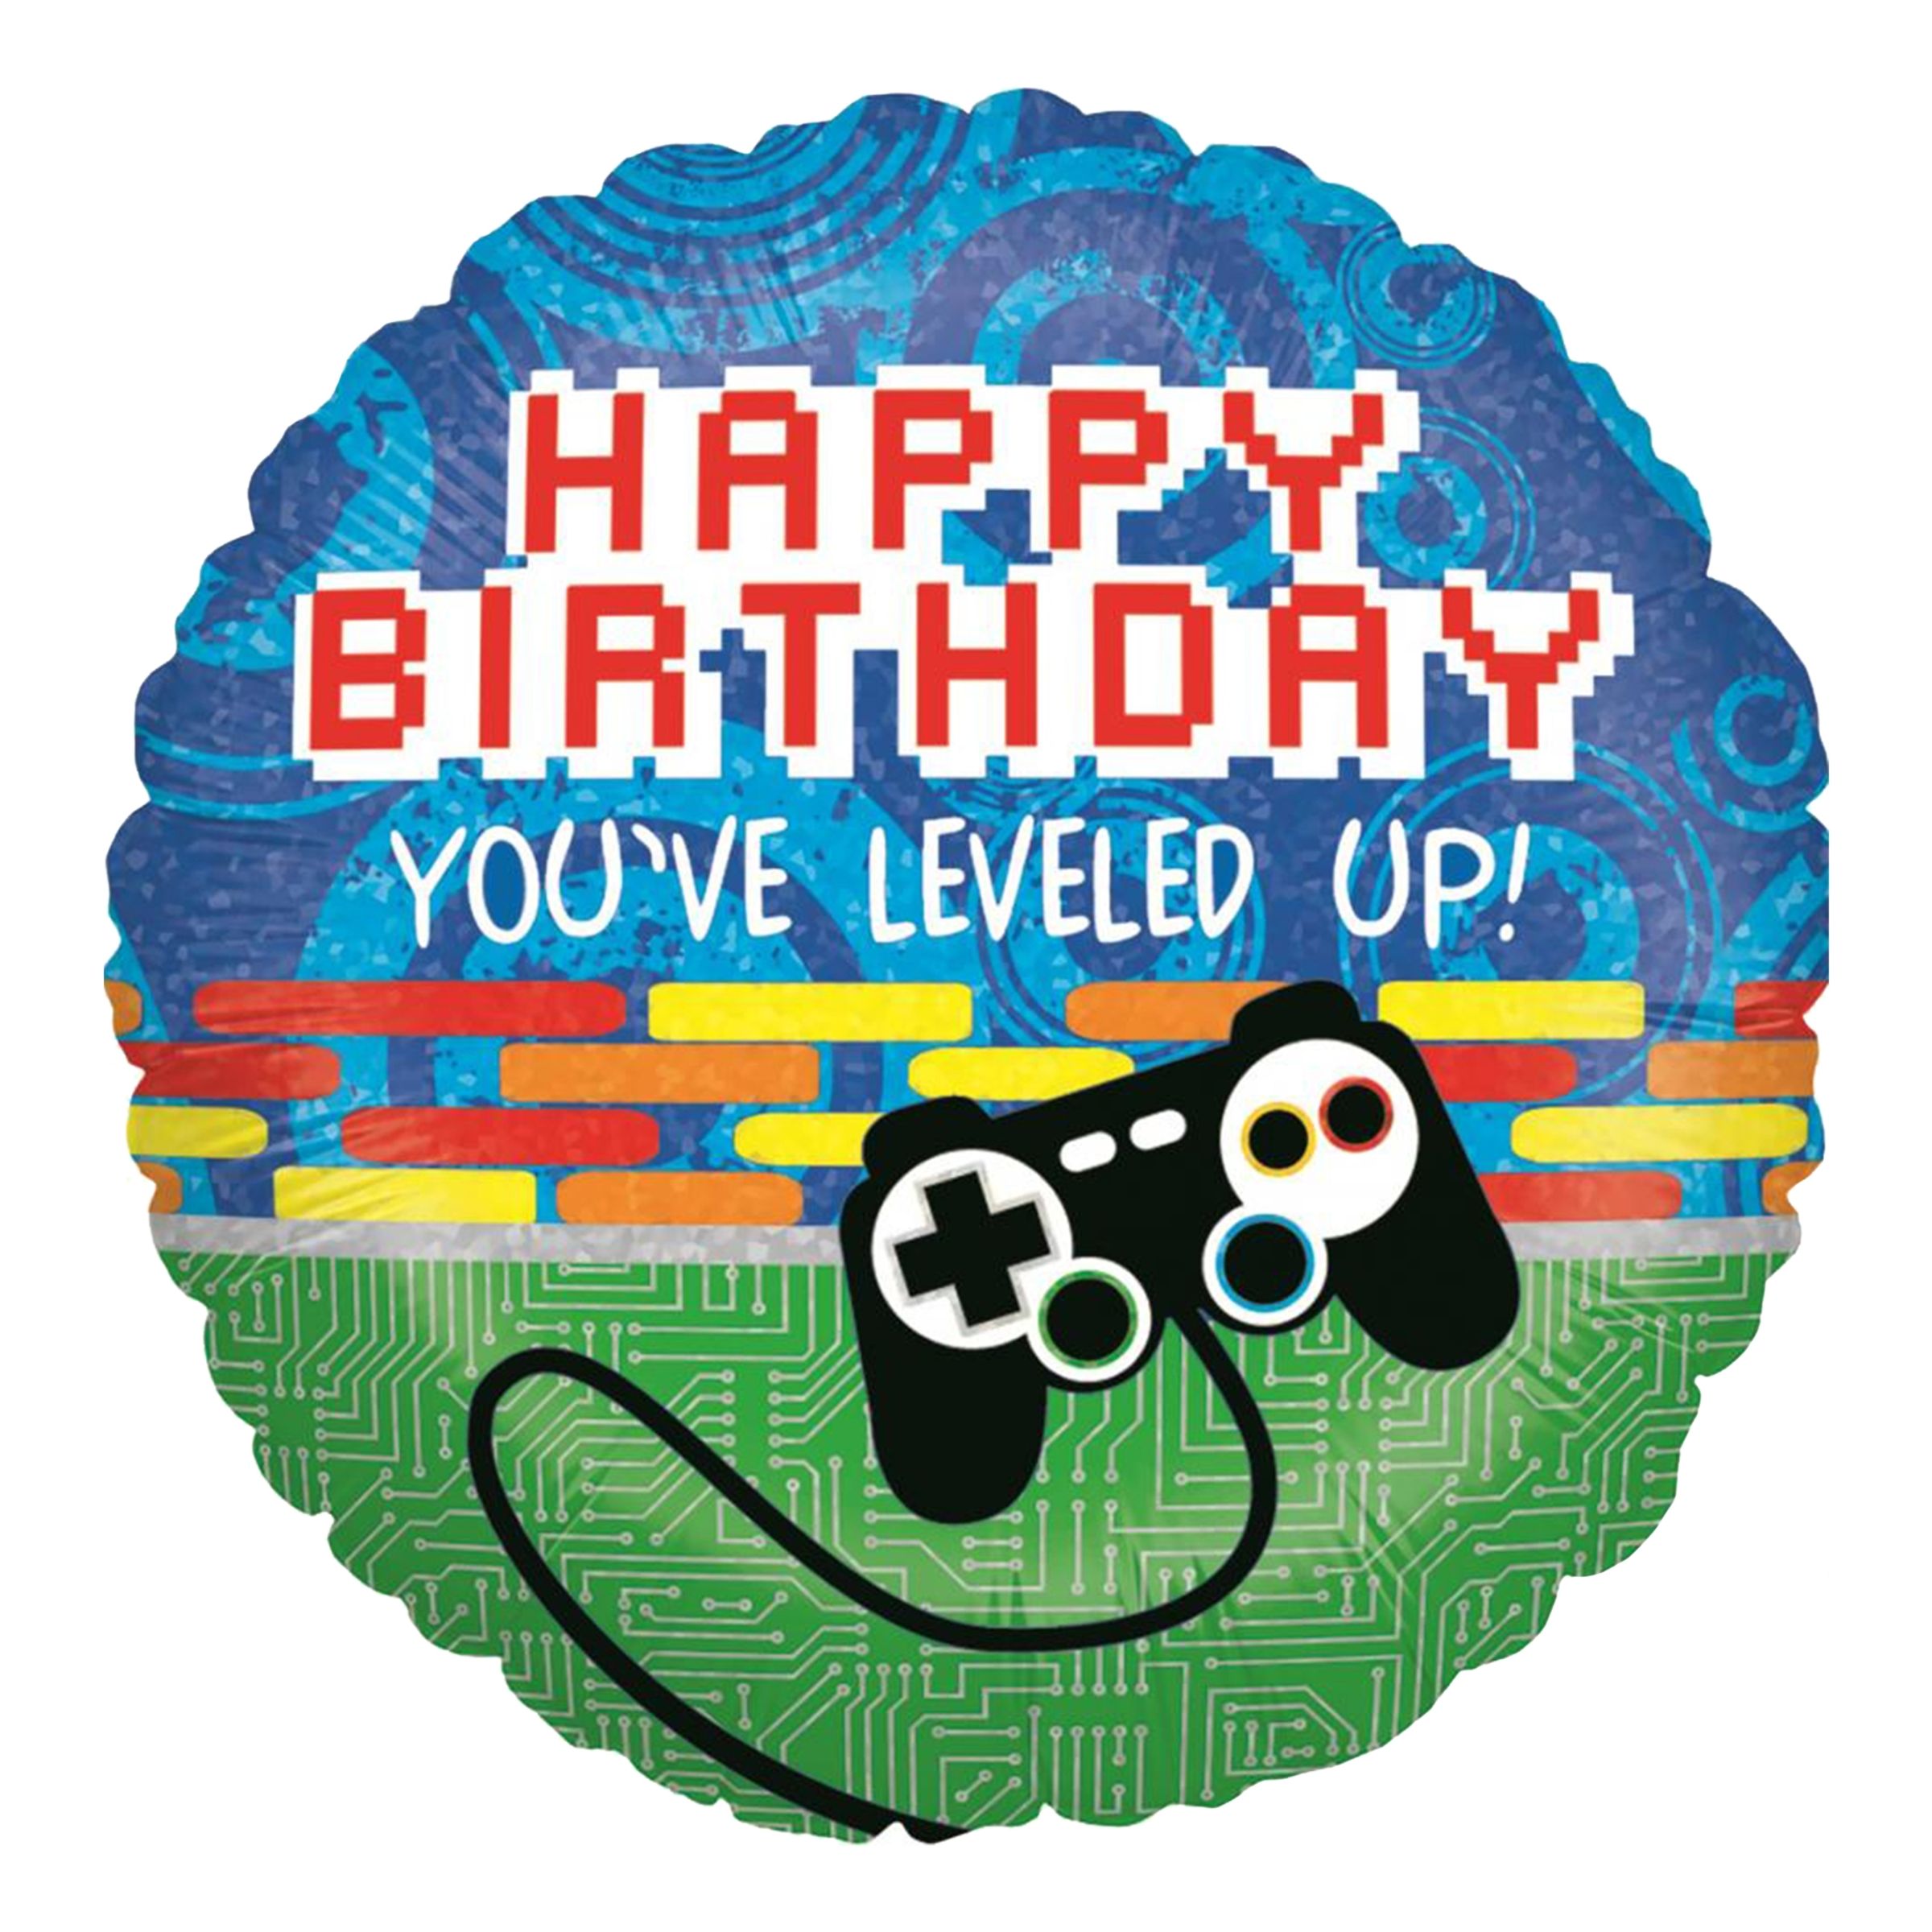 Folieballong Game Controller Birthday